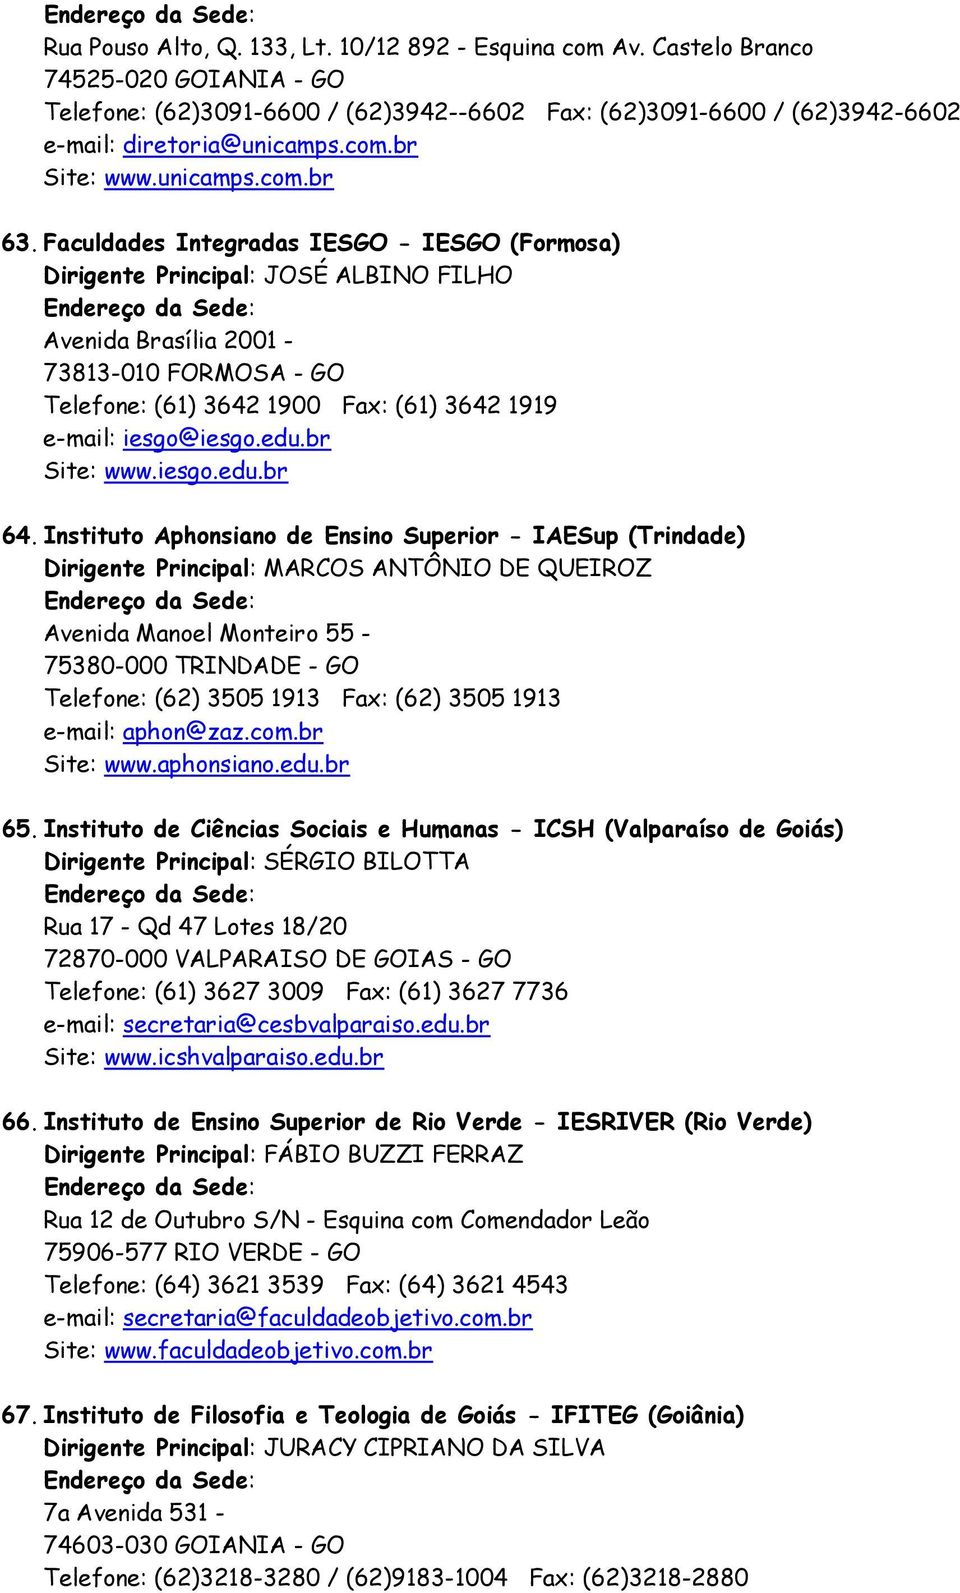 Faculdades Integradas IESGO - IESGO (Formosa) Dirigente Principal: JOSÉ ALBINO FILHO Avenida Brasília 2001-73813-010 FORMOSA - GO Telefone: (61) 3642 1900 Fax: (61) 3642 1919 e-mail: iesgo@iesgo.edu.